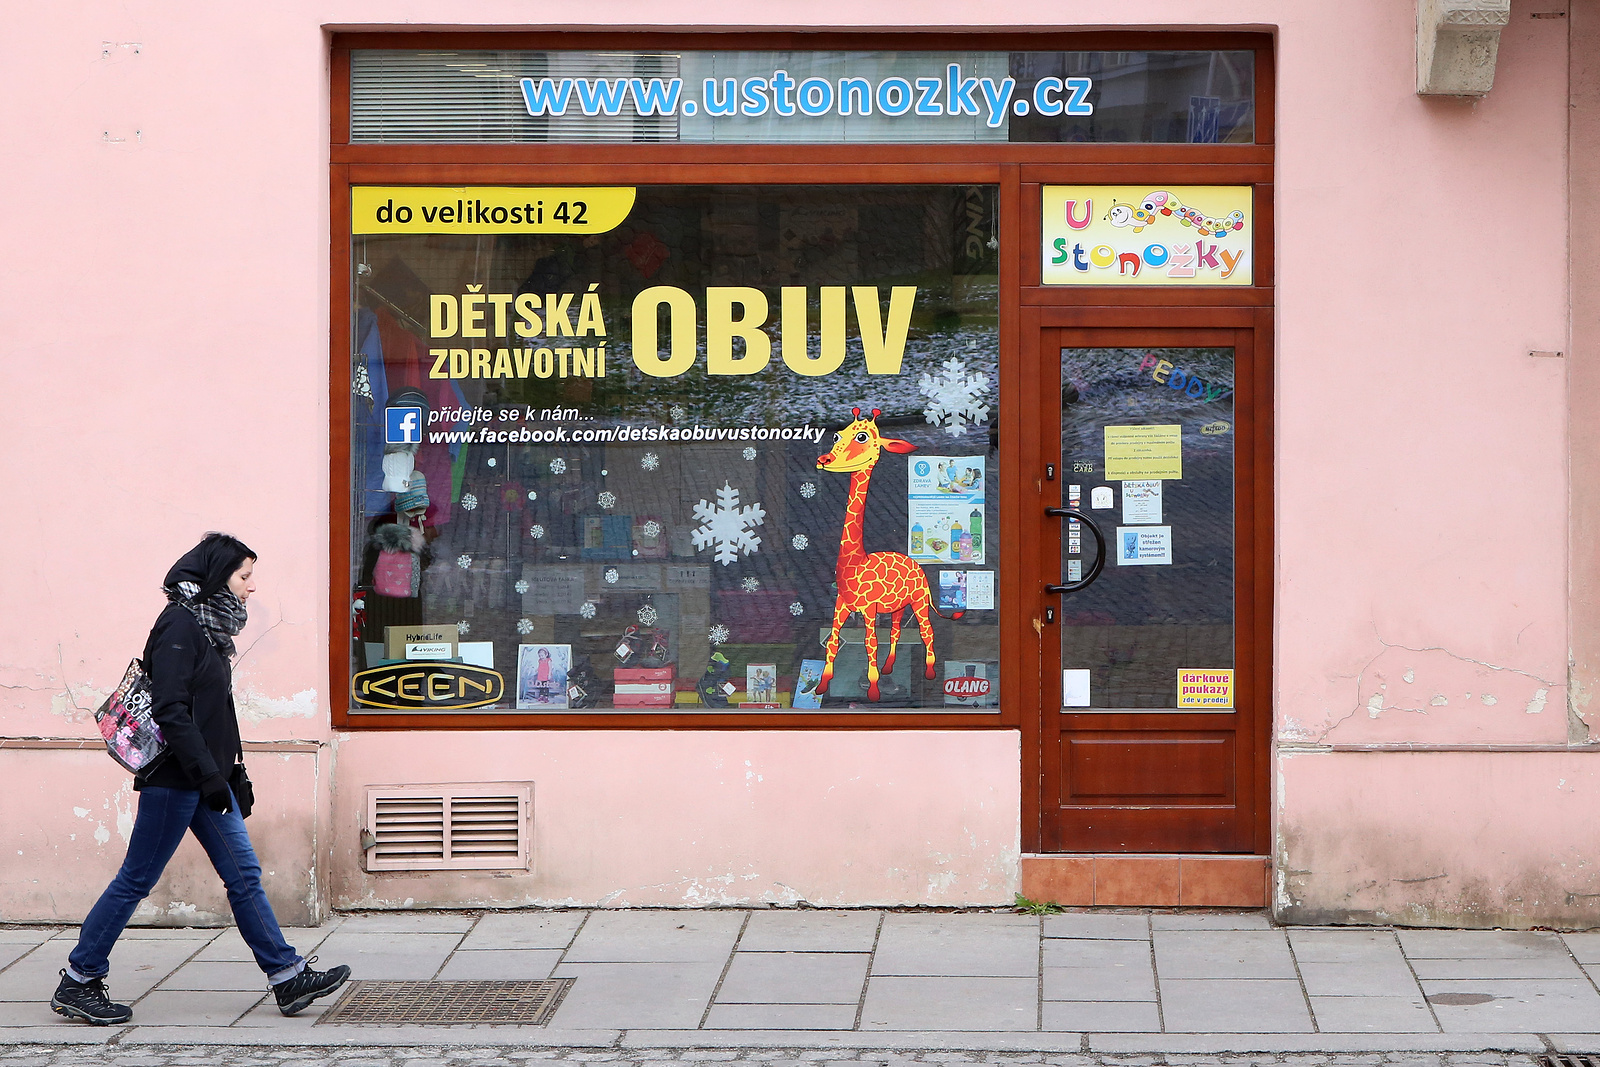 OBRAZEM: Papírnictví a dětská obuv jsou otevřené - Plzeňský deník